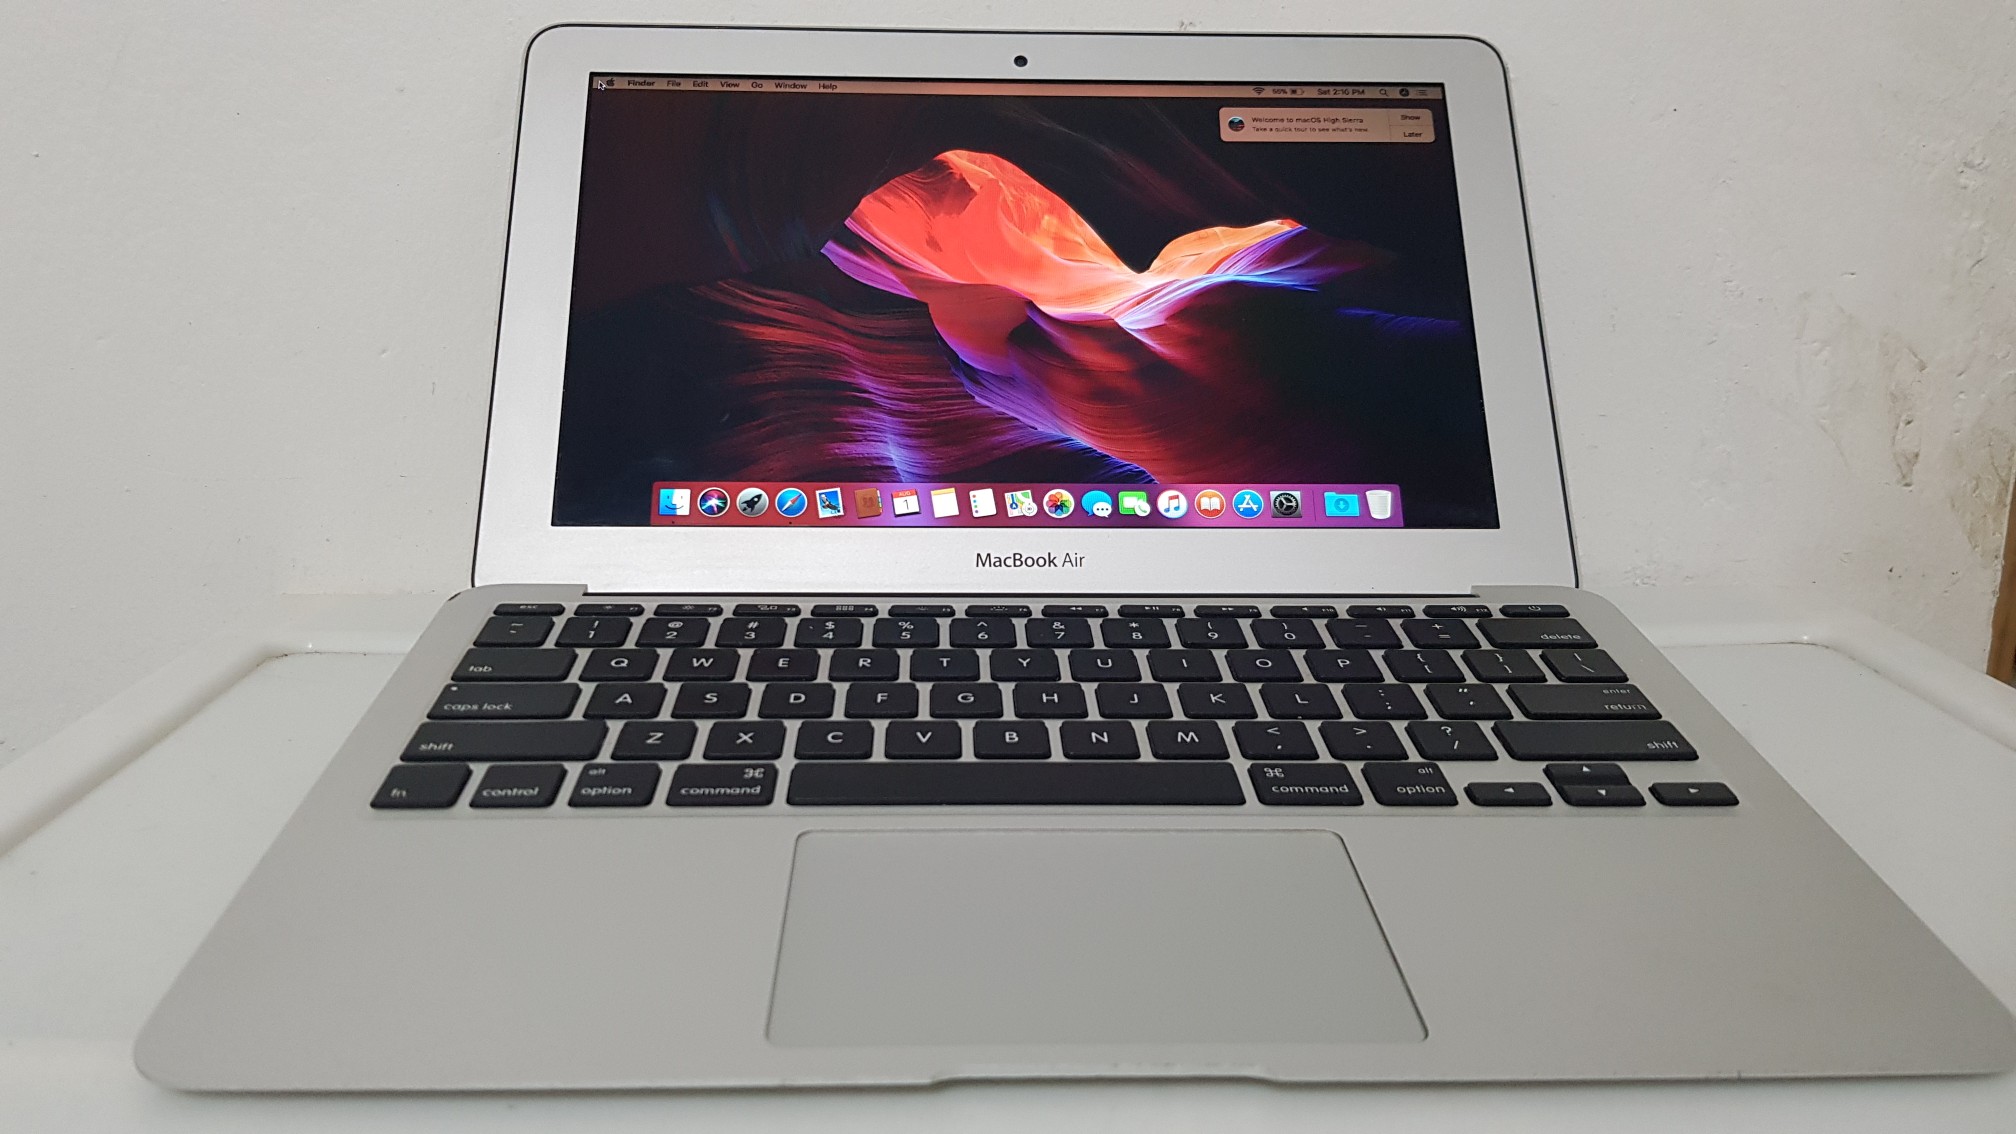 computadoras y laptops - Macbook Air 13.3 Pulg Core i5 Ram 4gb Disco 128gb Año 2015 0